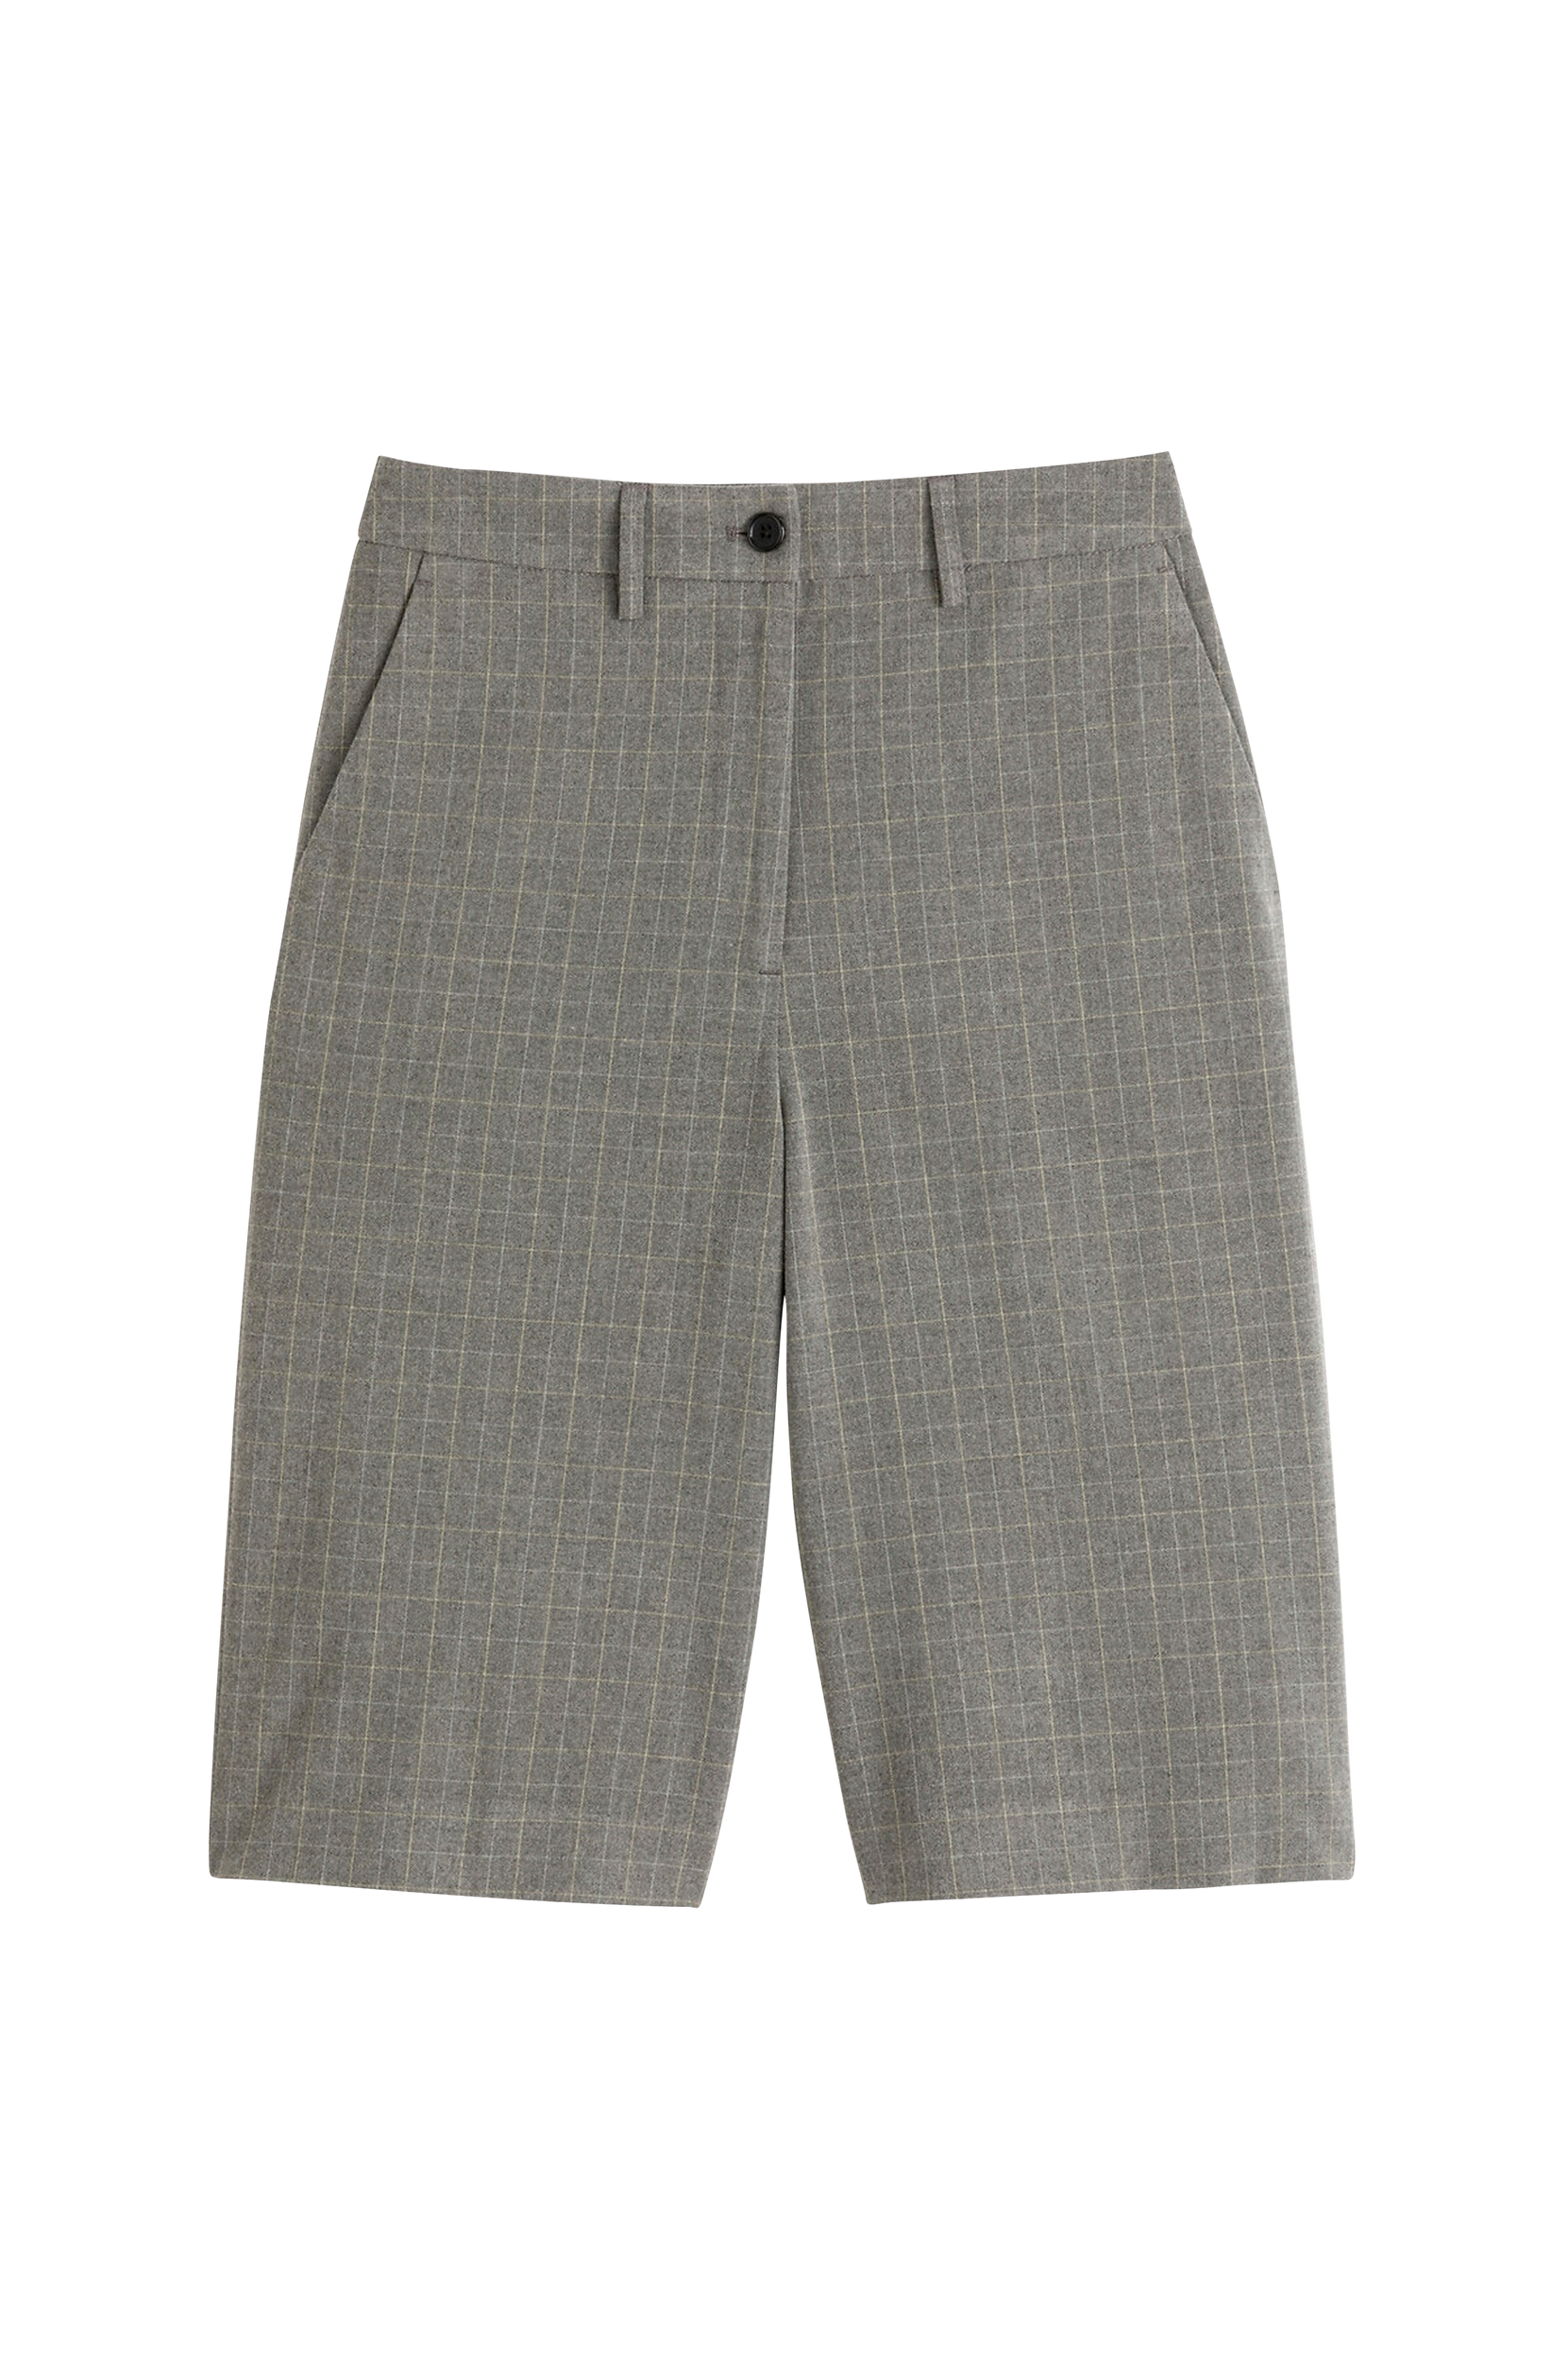 La Redoute - Ternede shorts - Grå - 34